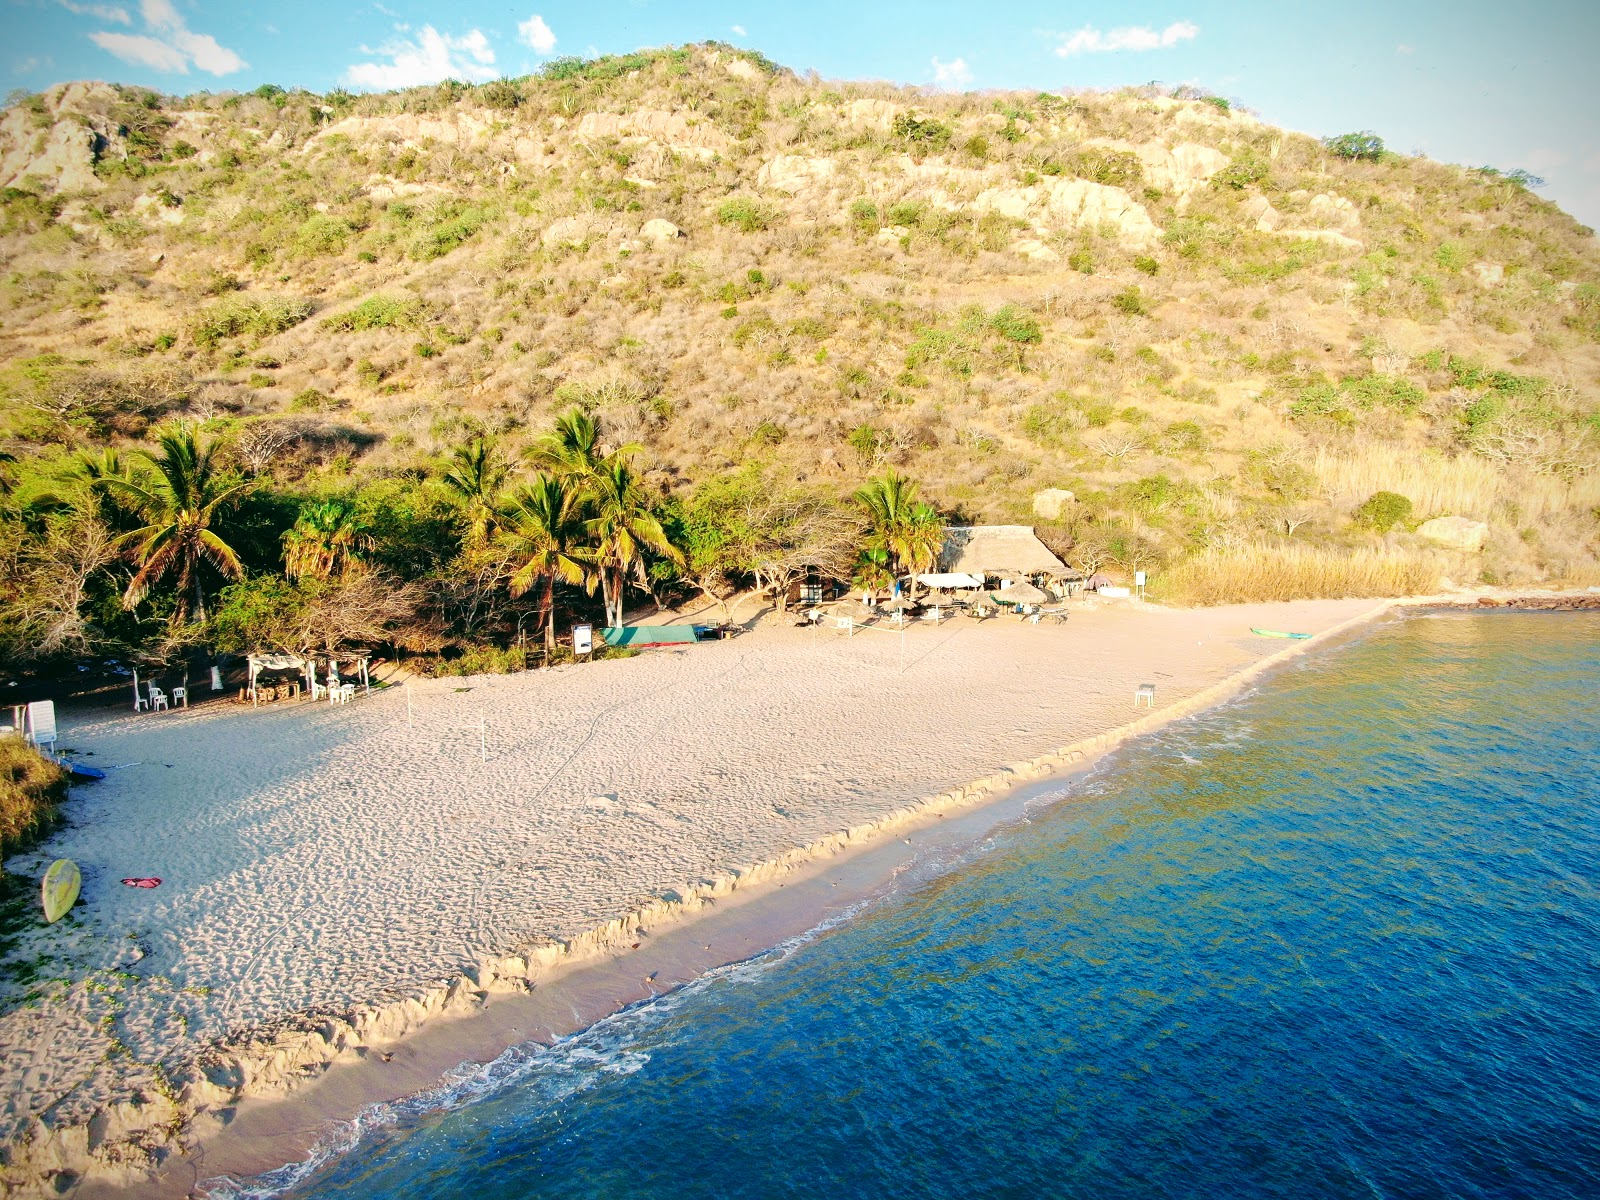 Foto av Venados beach med hög nivå av renlighet